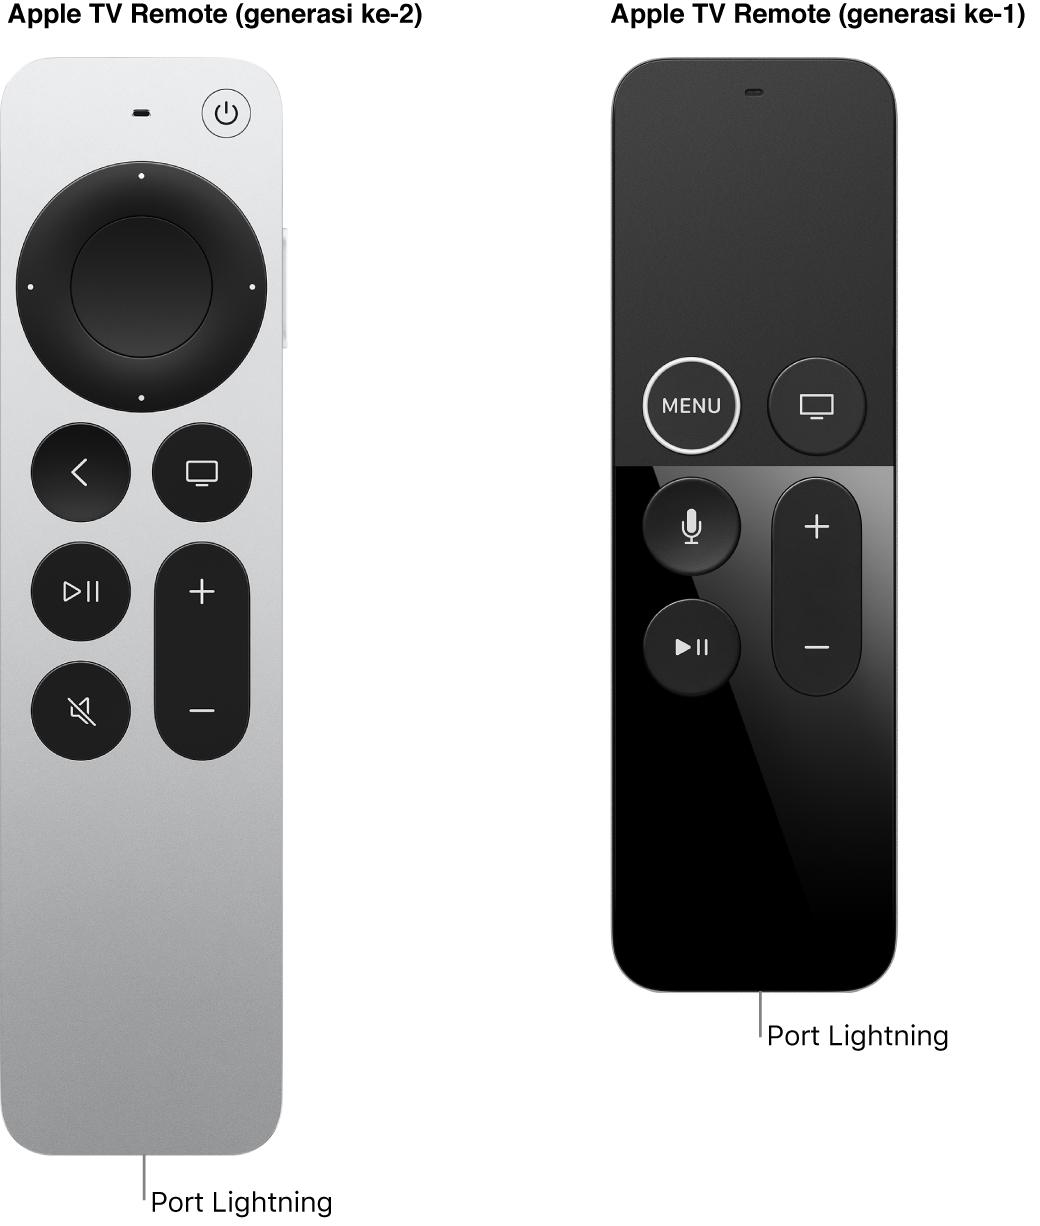 Gambar Remote Apple TV (generasi ke-2) dan Remote Apple TV (generasi ke-1) yang menampilkan port Lightning